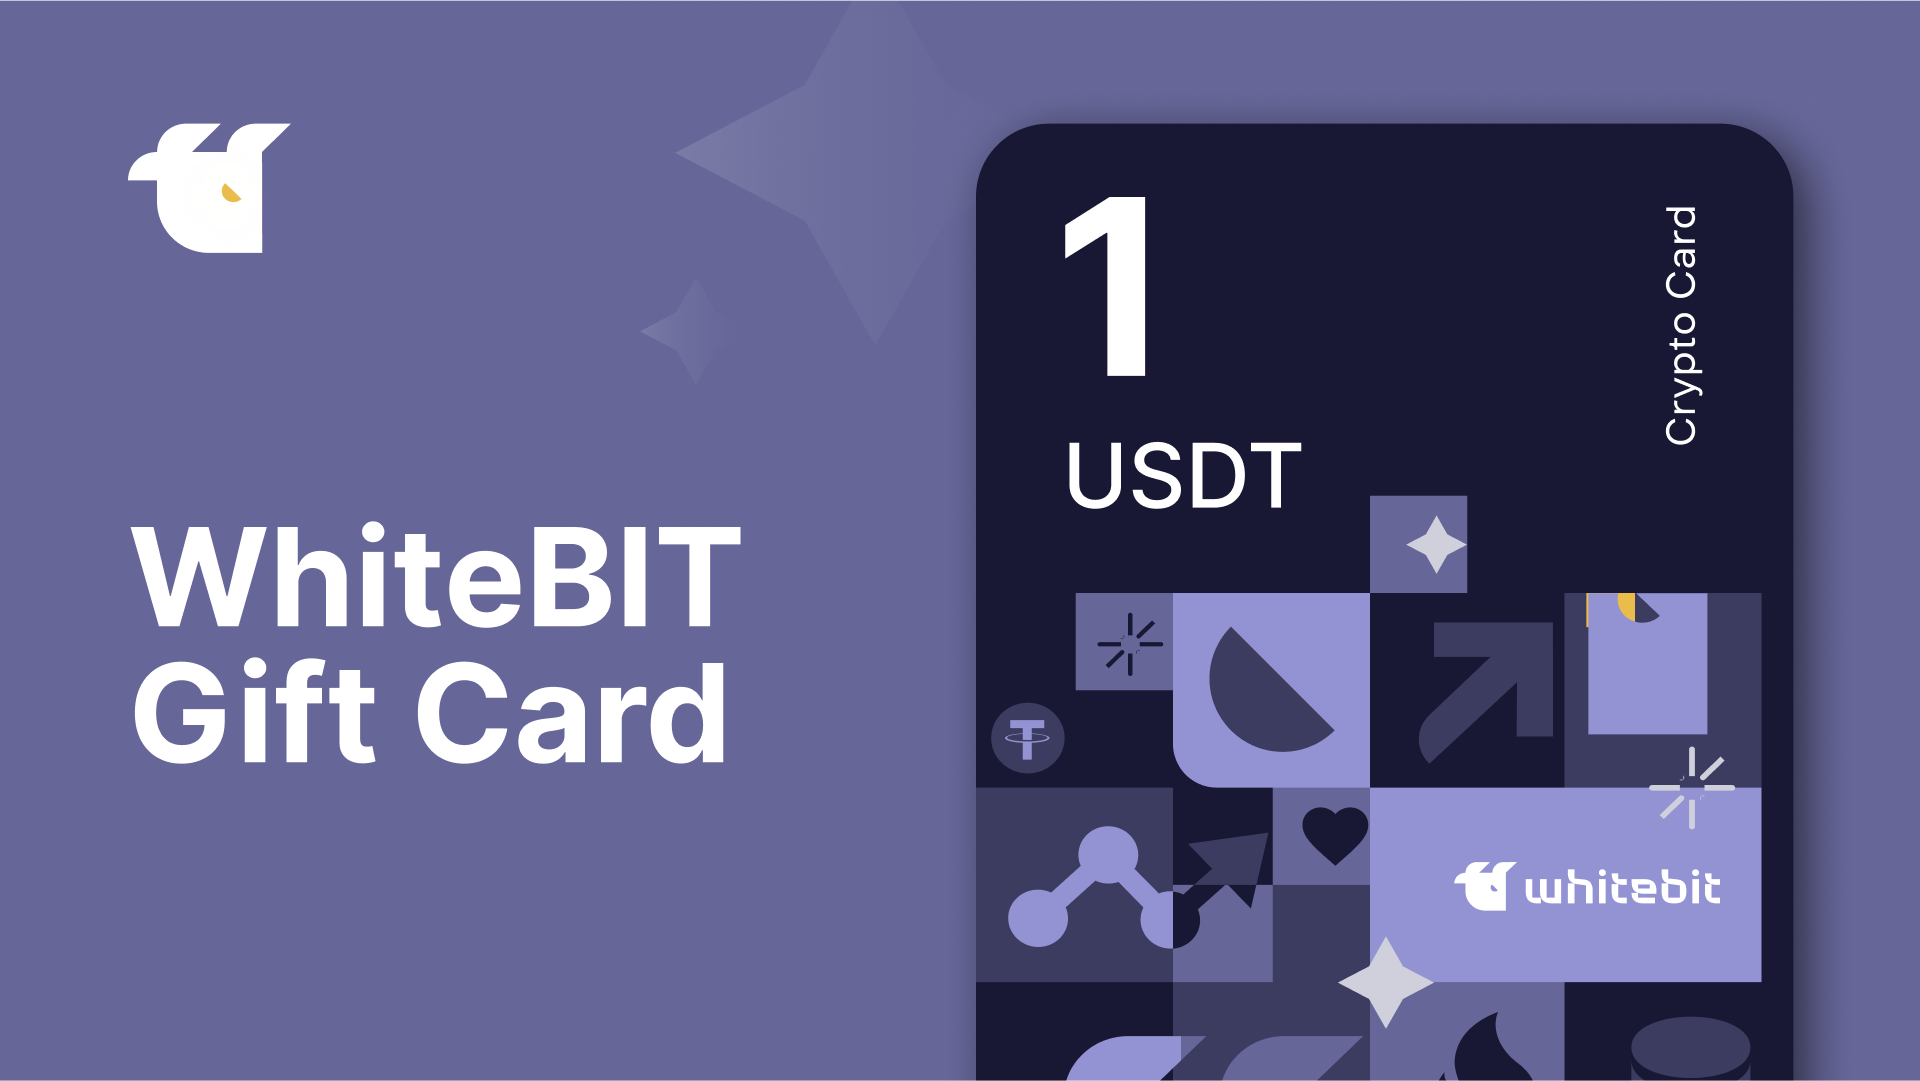 WhiteBIT 1 USDT Gift Card 1.33 $